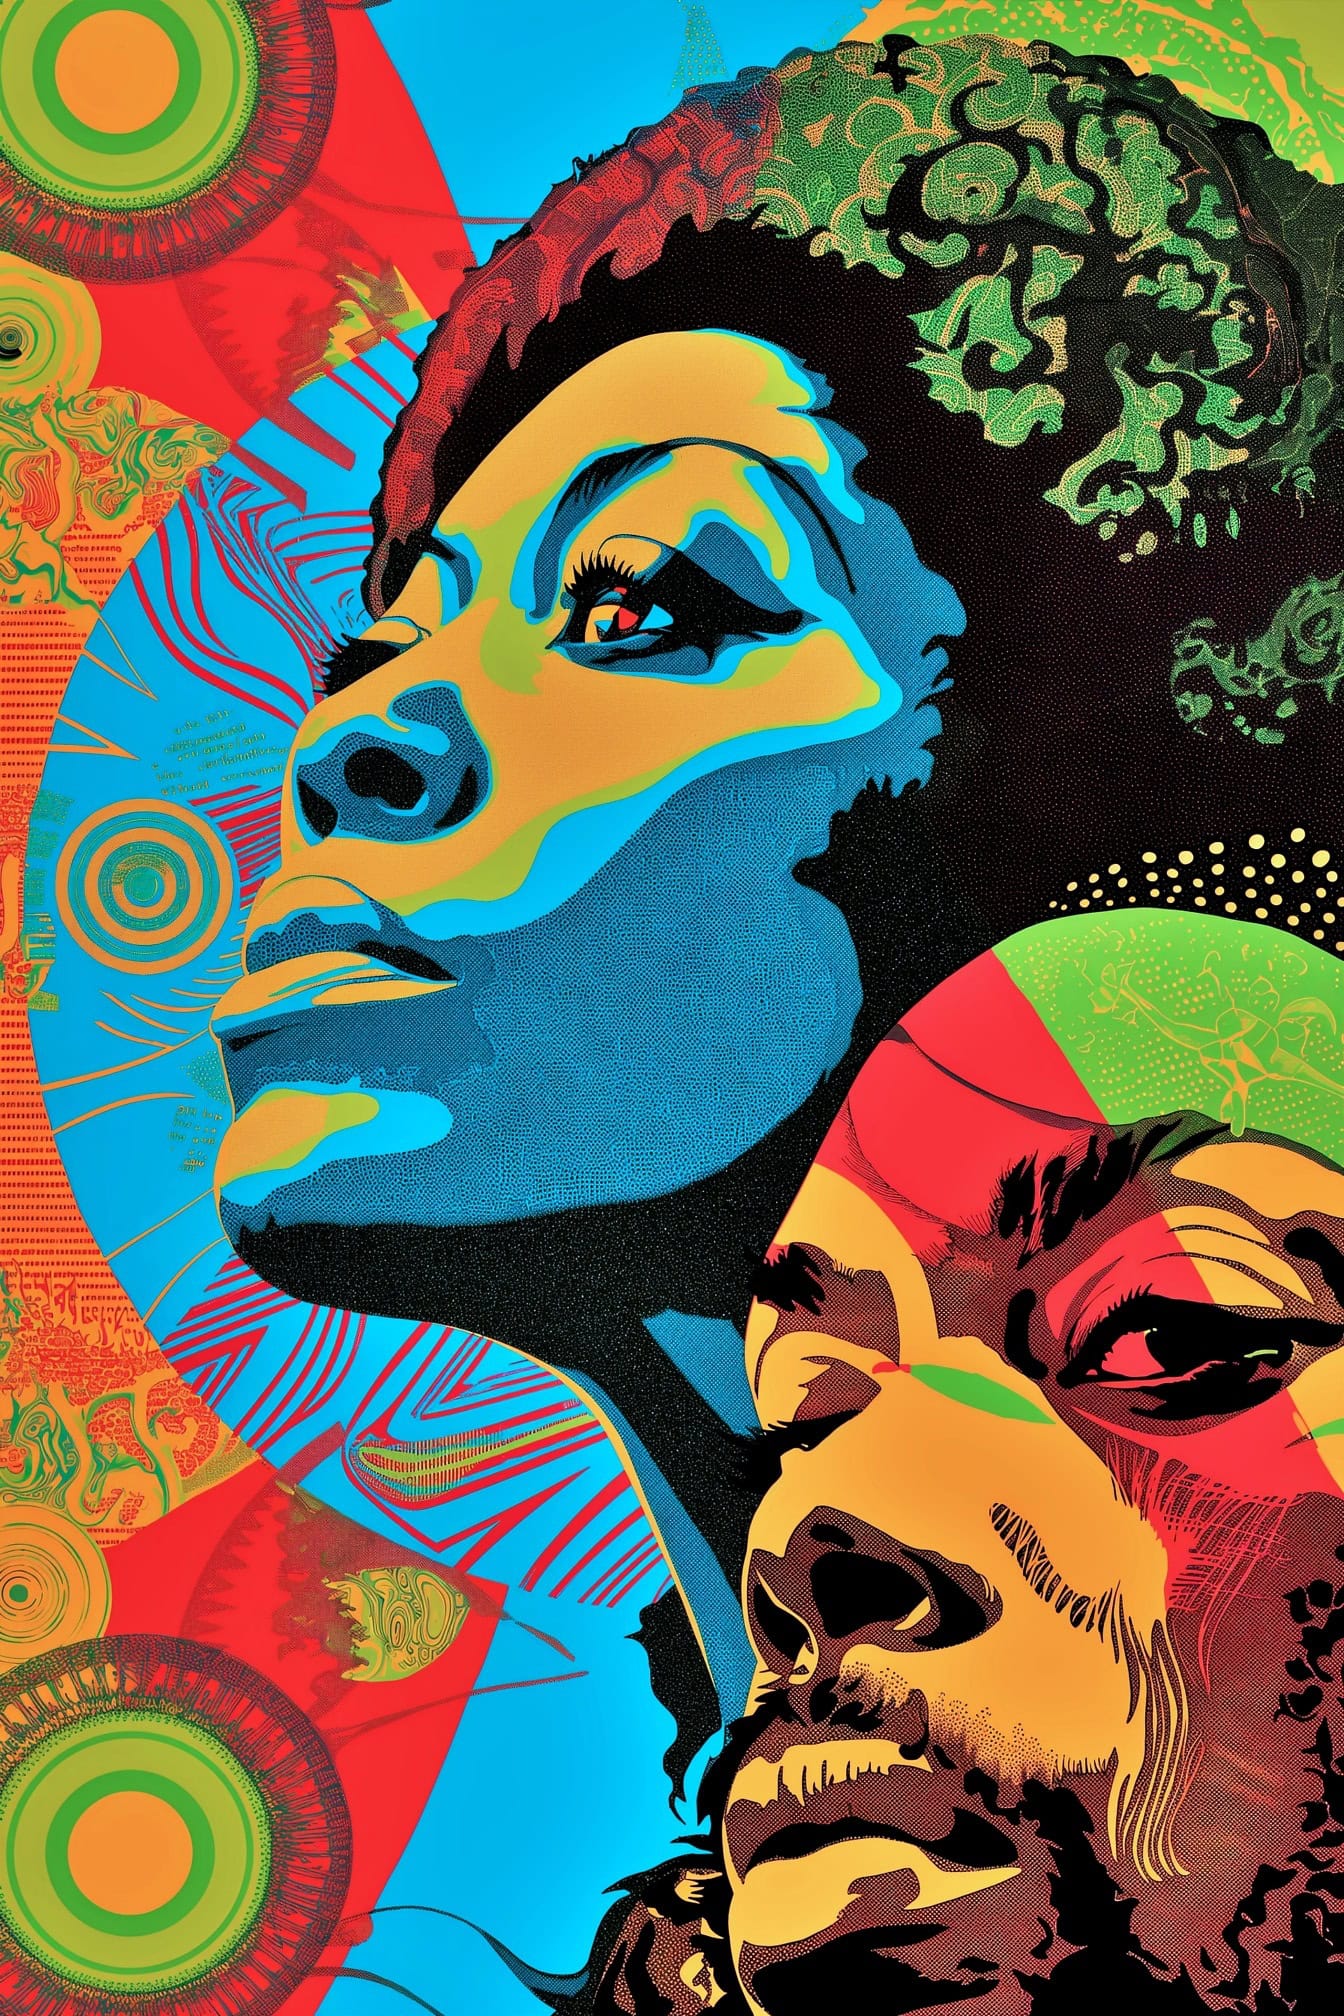 Abstrakt levende plakat i pop art stil ansigter af en afrikansk kvinde og en mand med en farverig baggrund